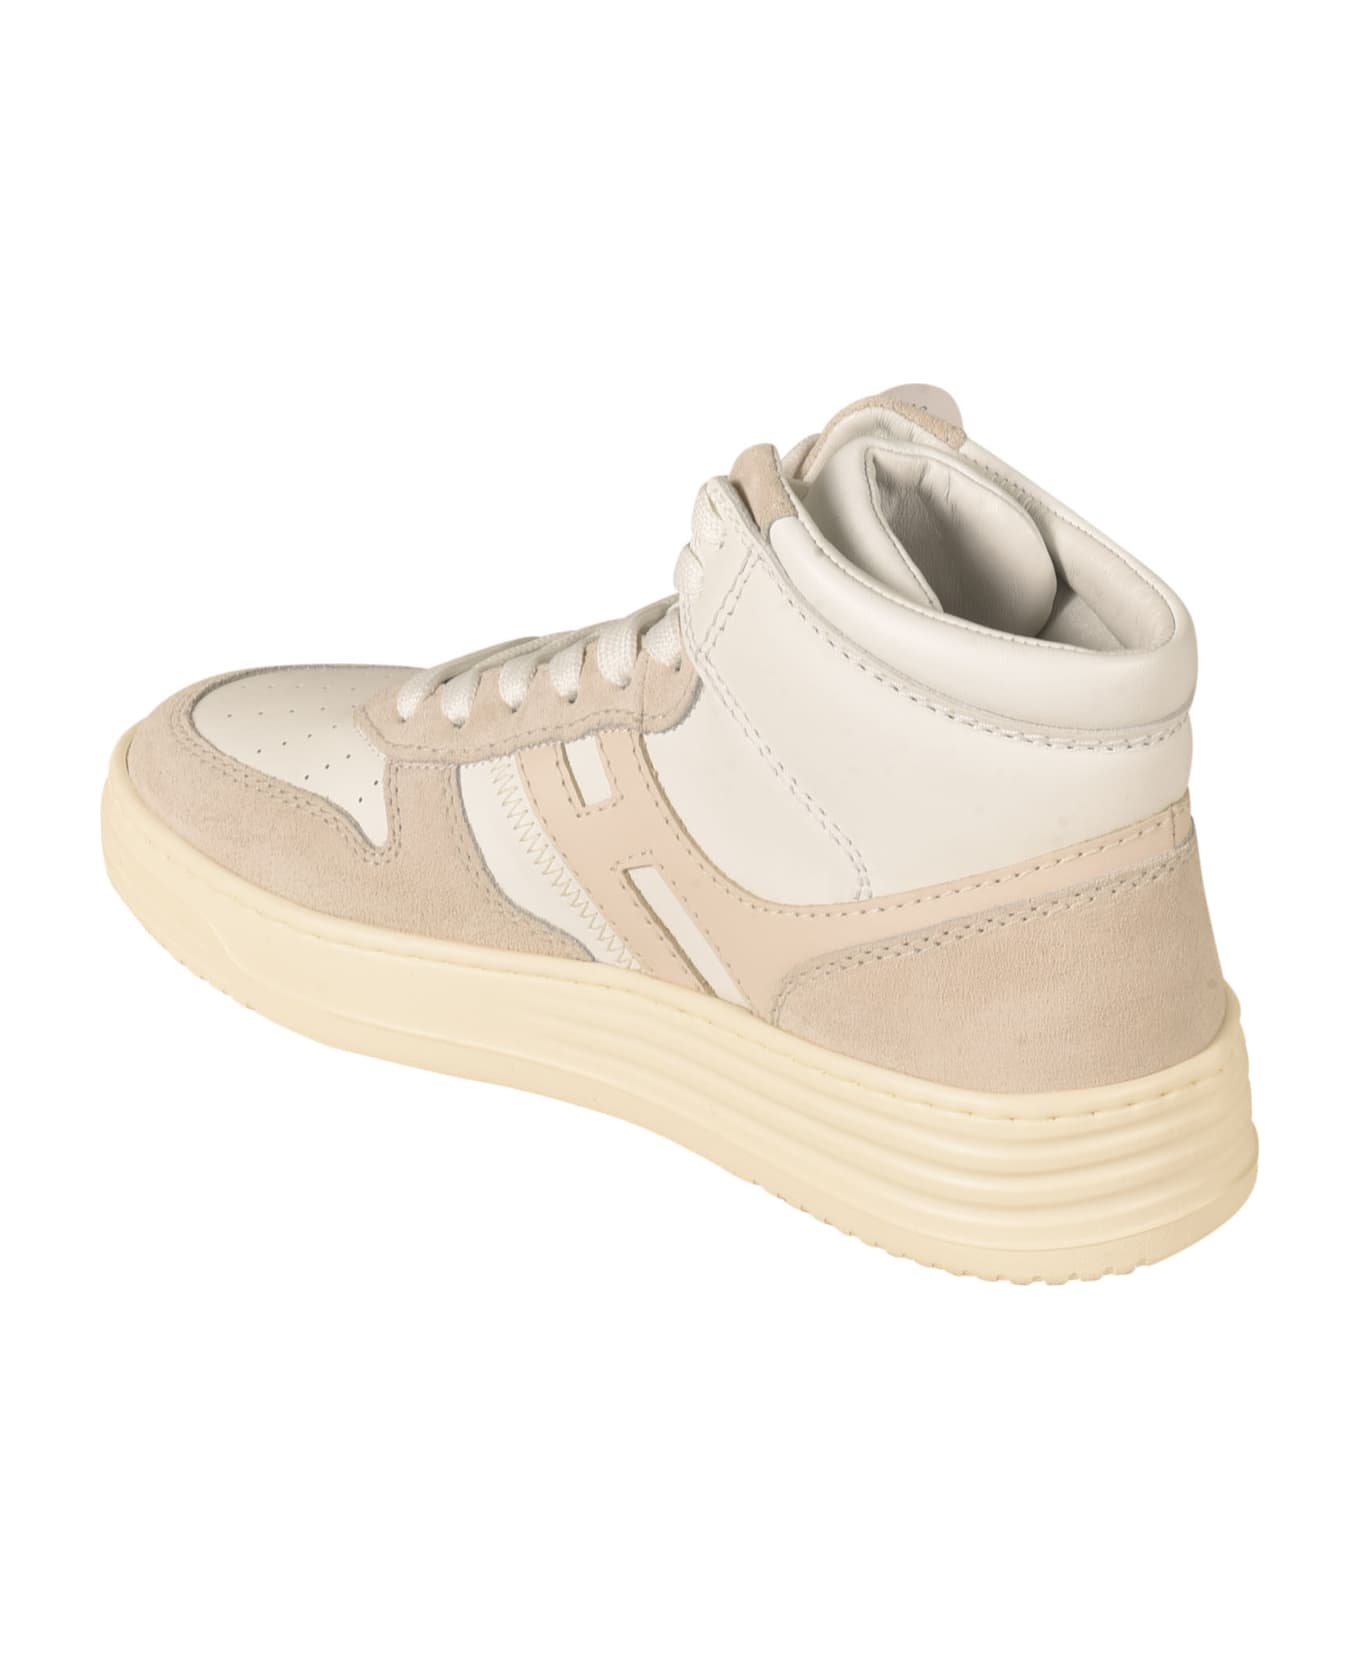 Hogan H630 Basket Sneakers - White スニーカー